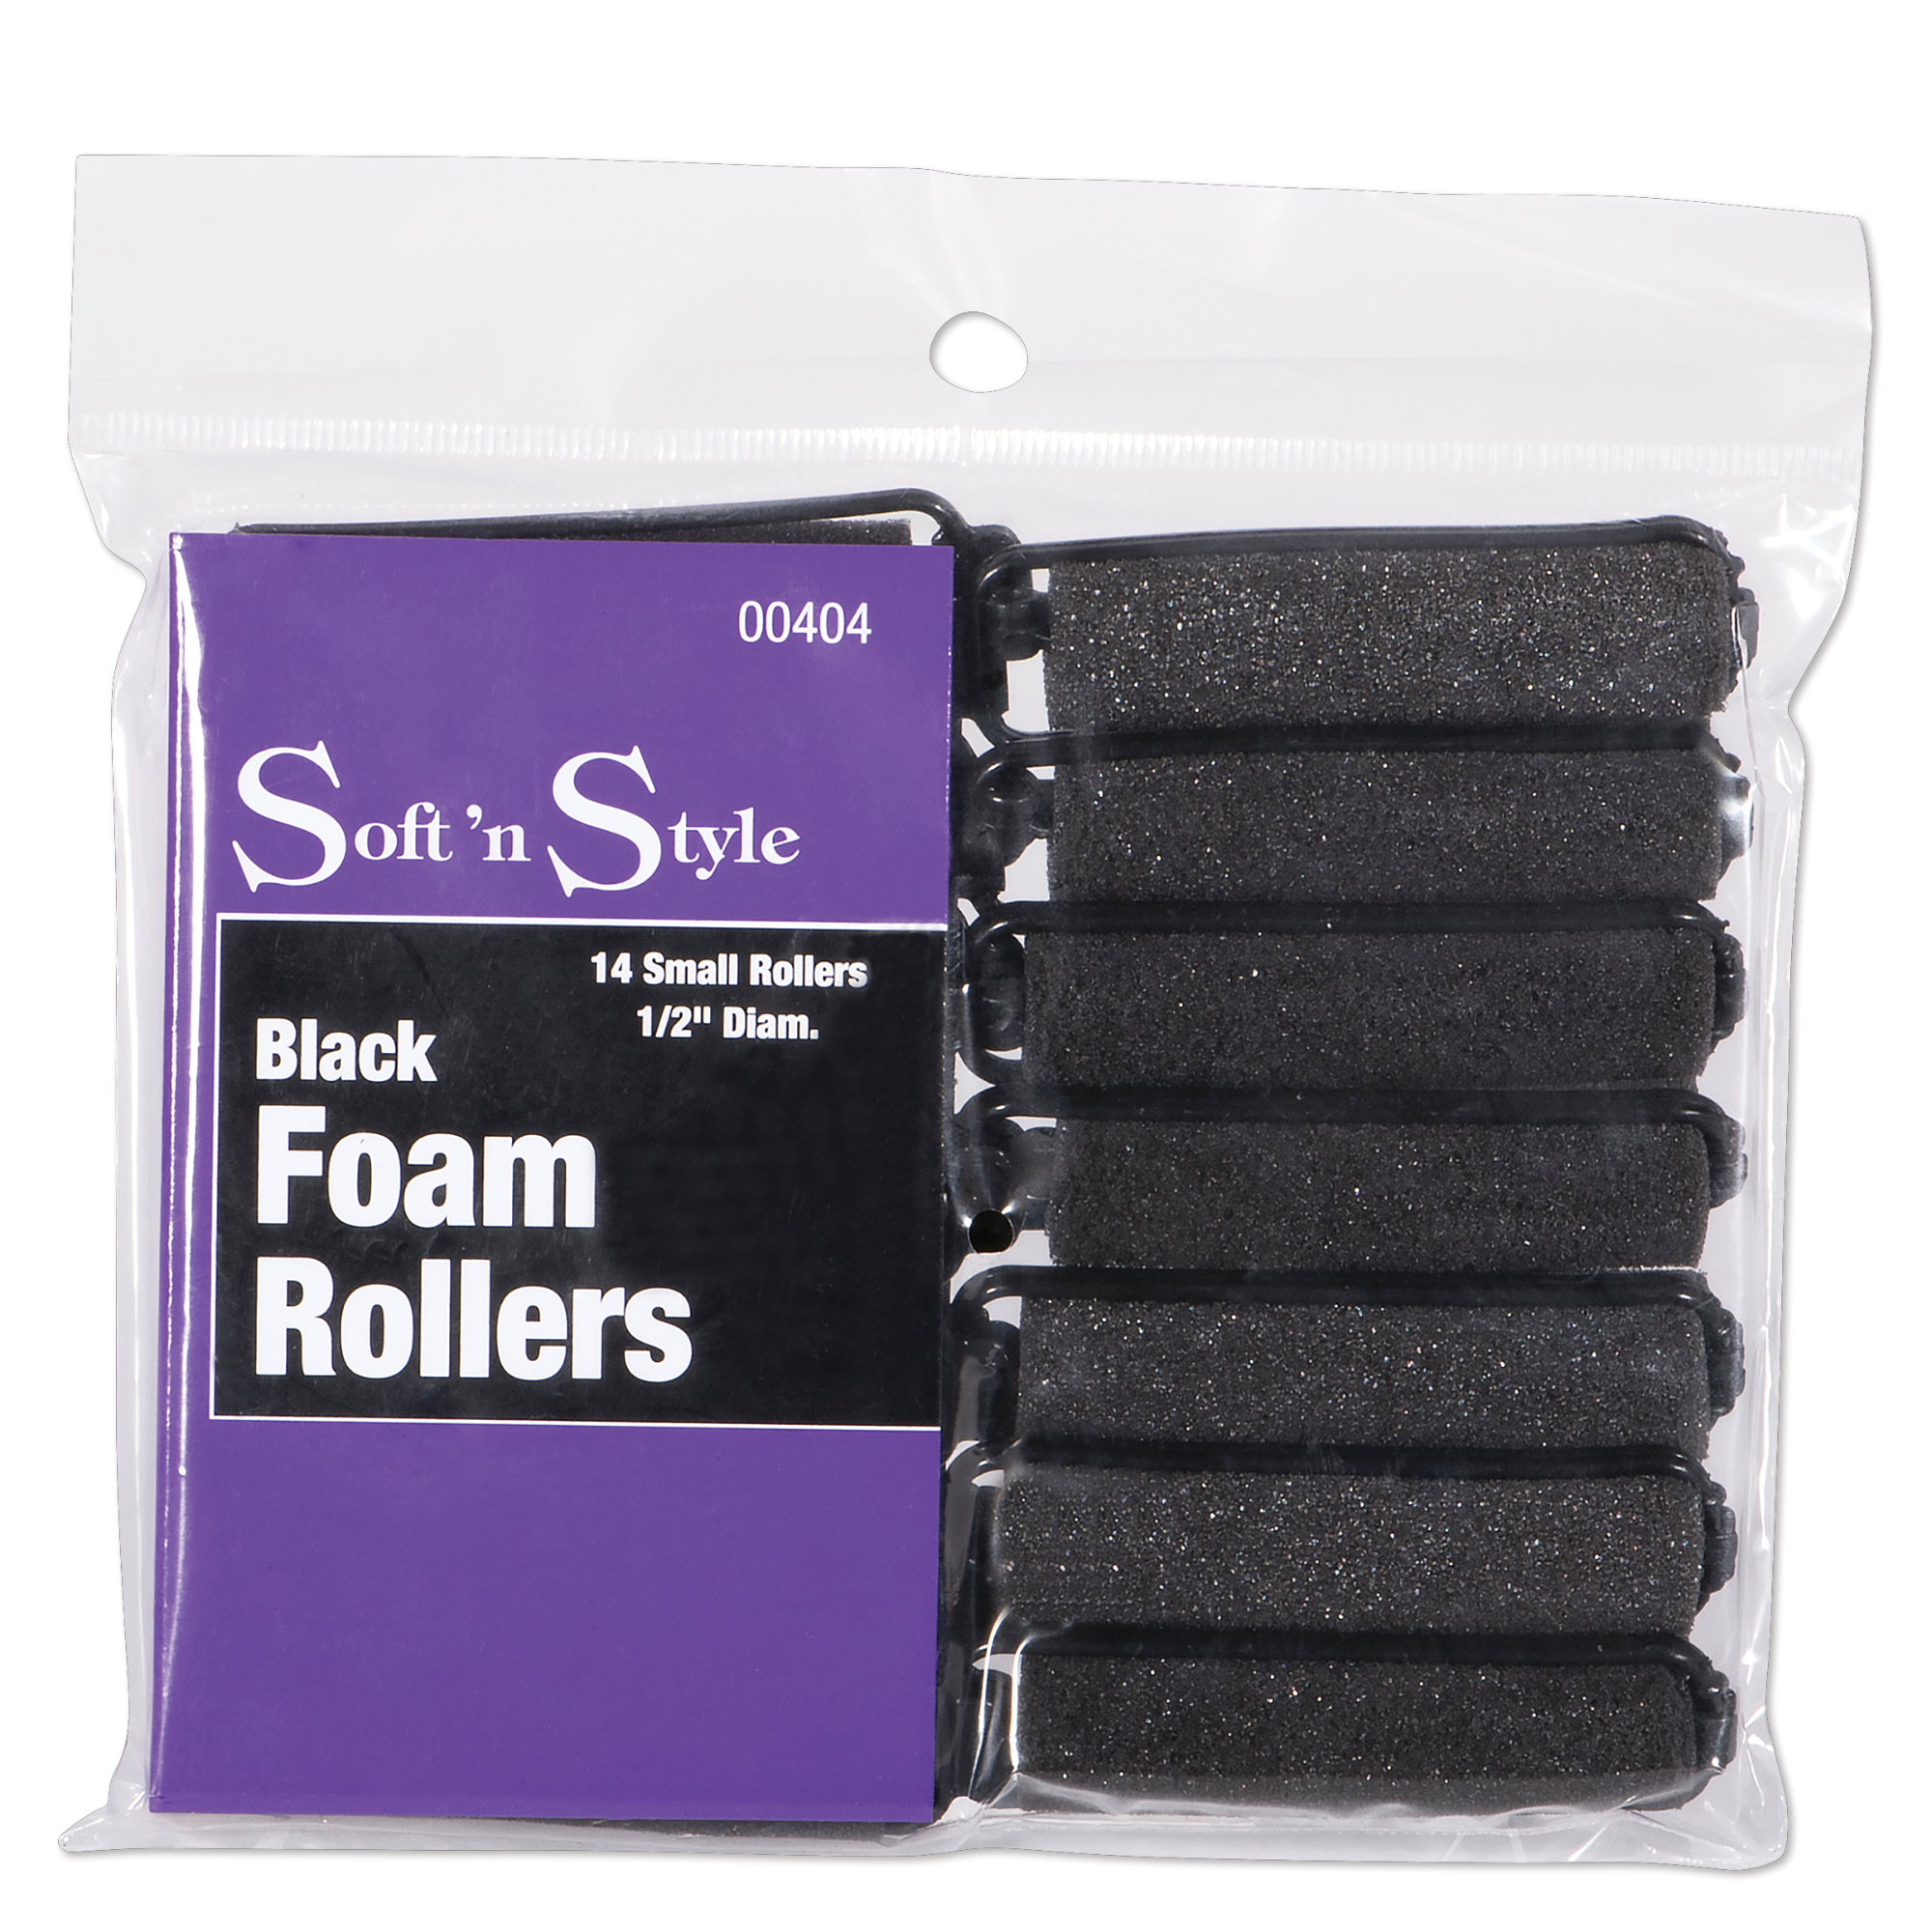 Foam Rollers, Small - 1/2"